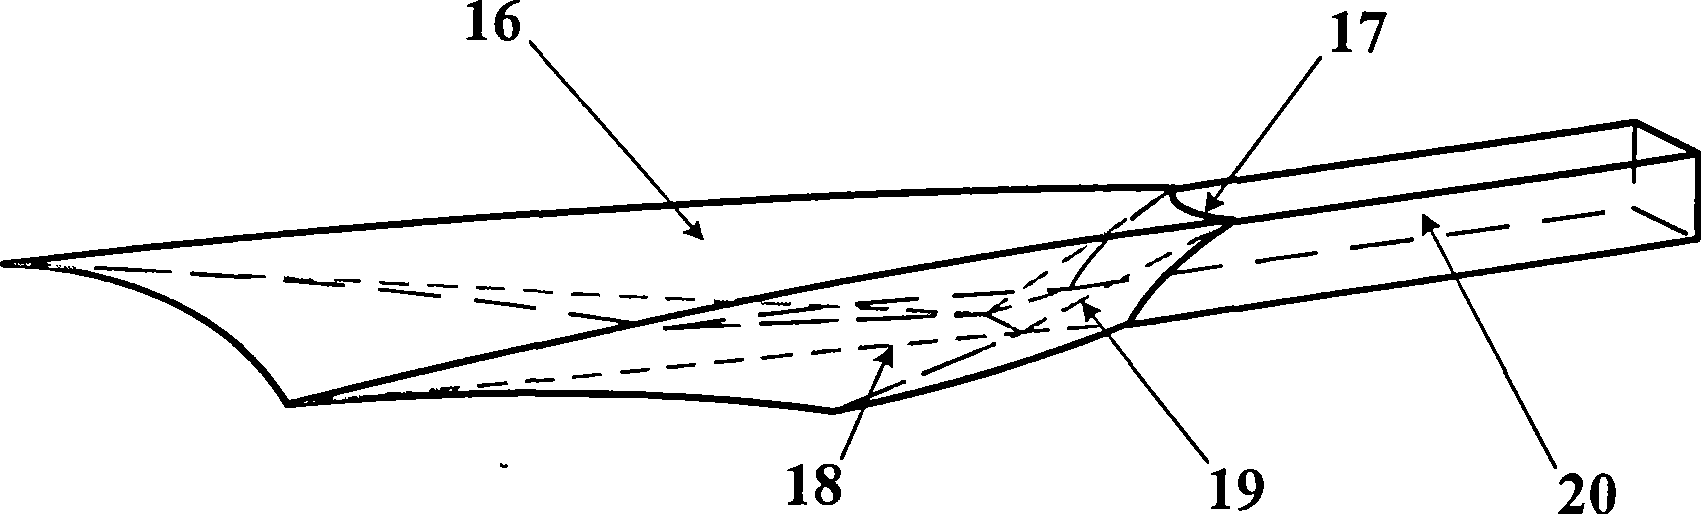 Internal waverider hypersonic inlet and design method based on random shock form